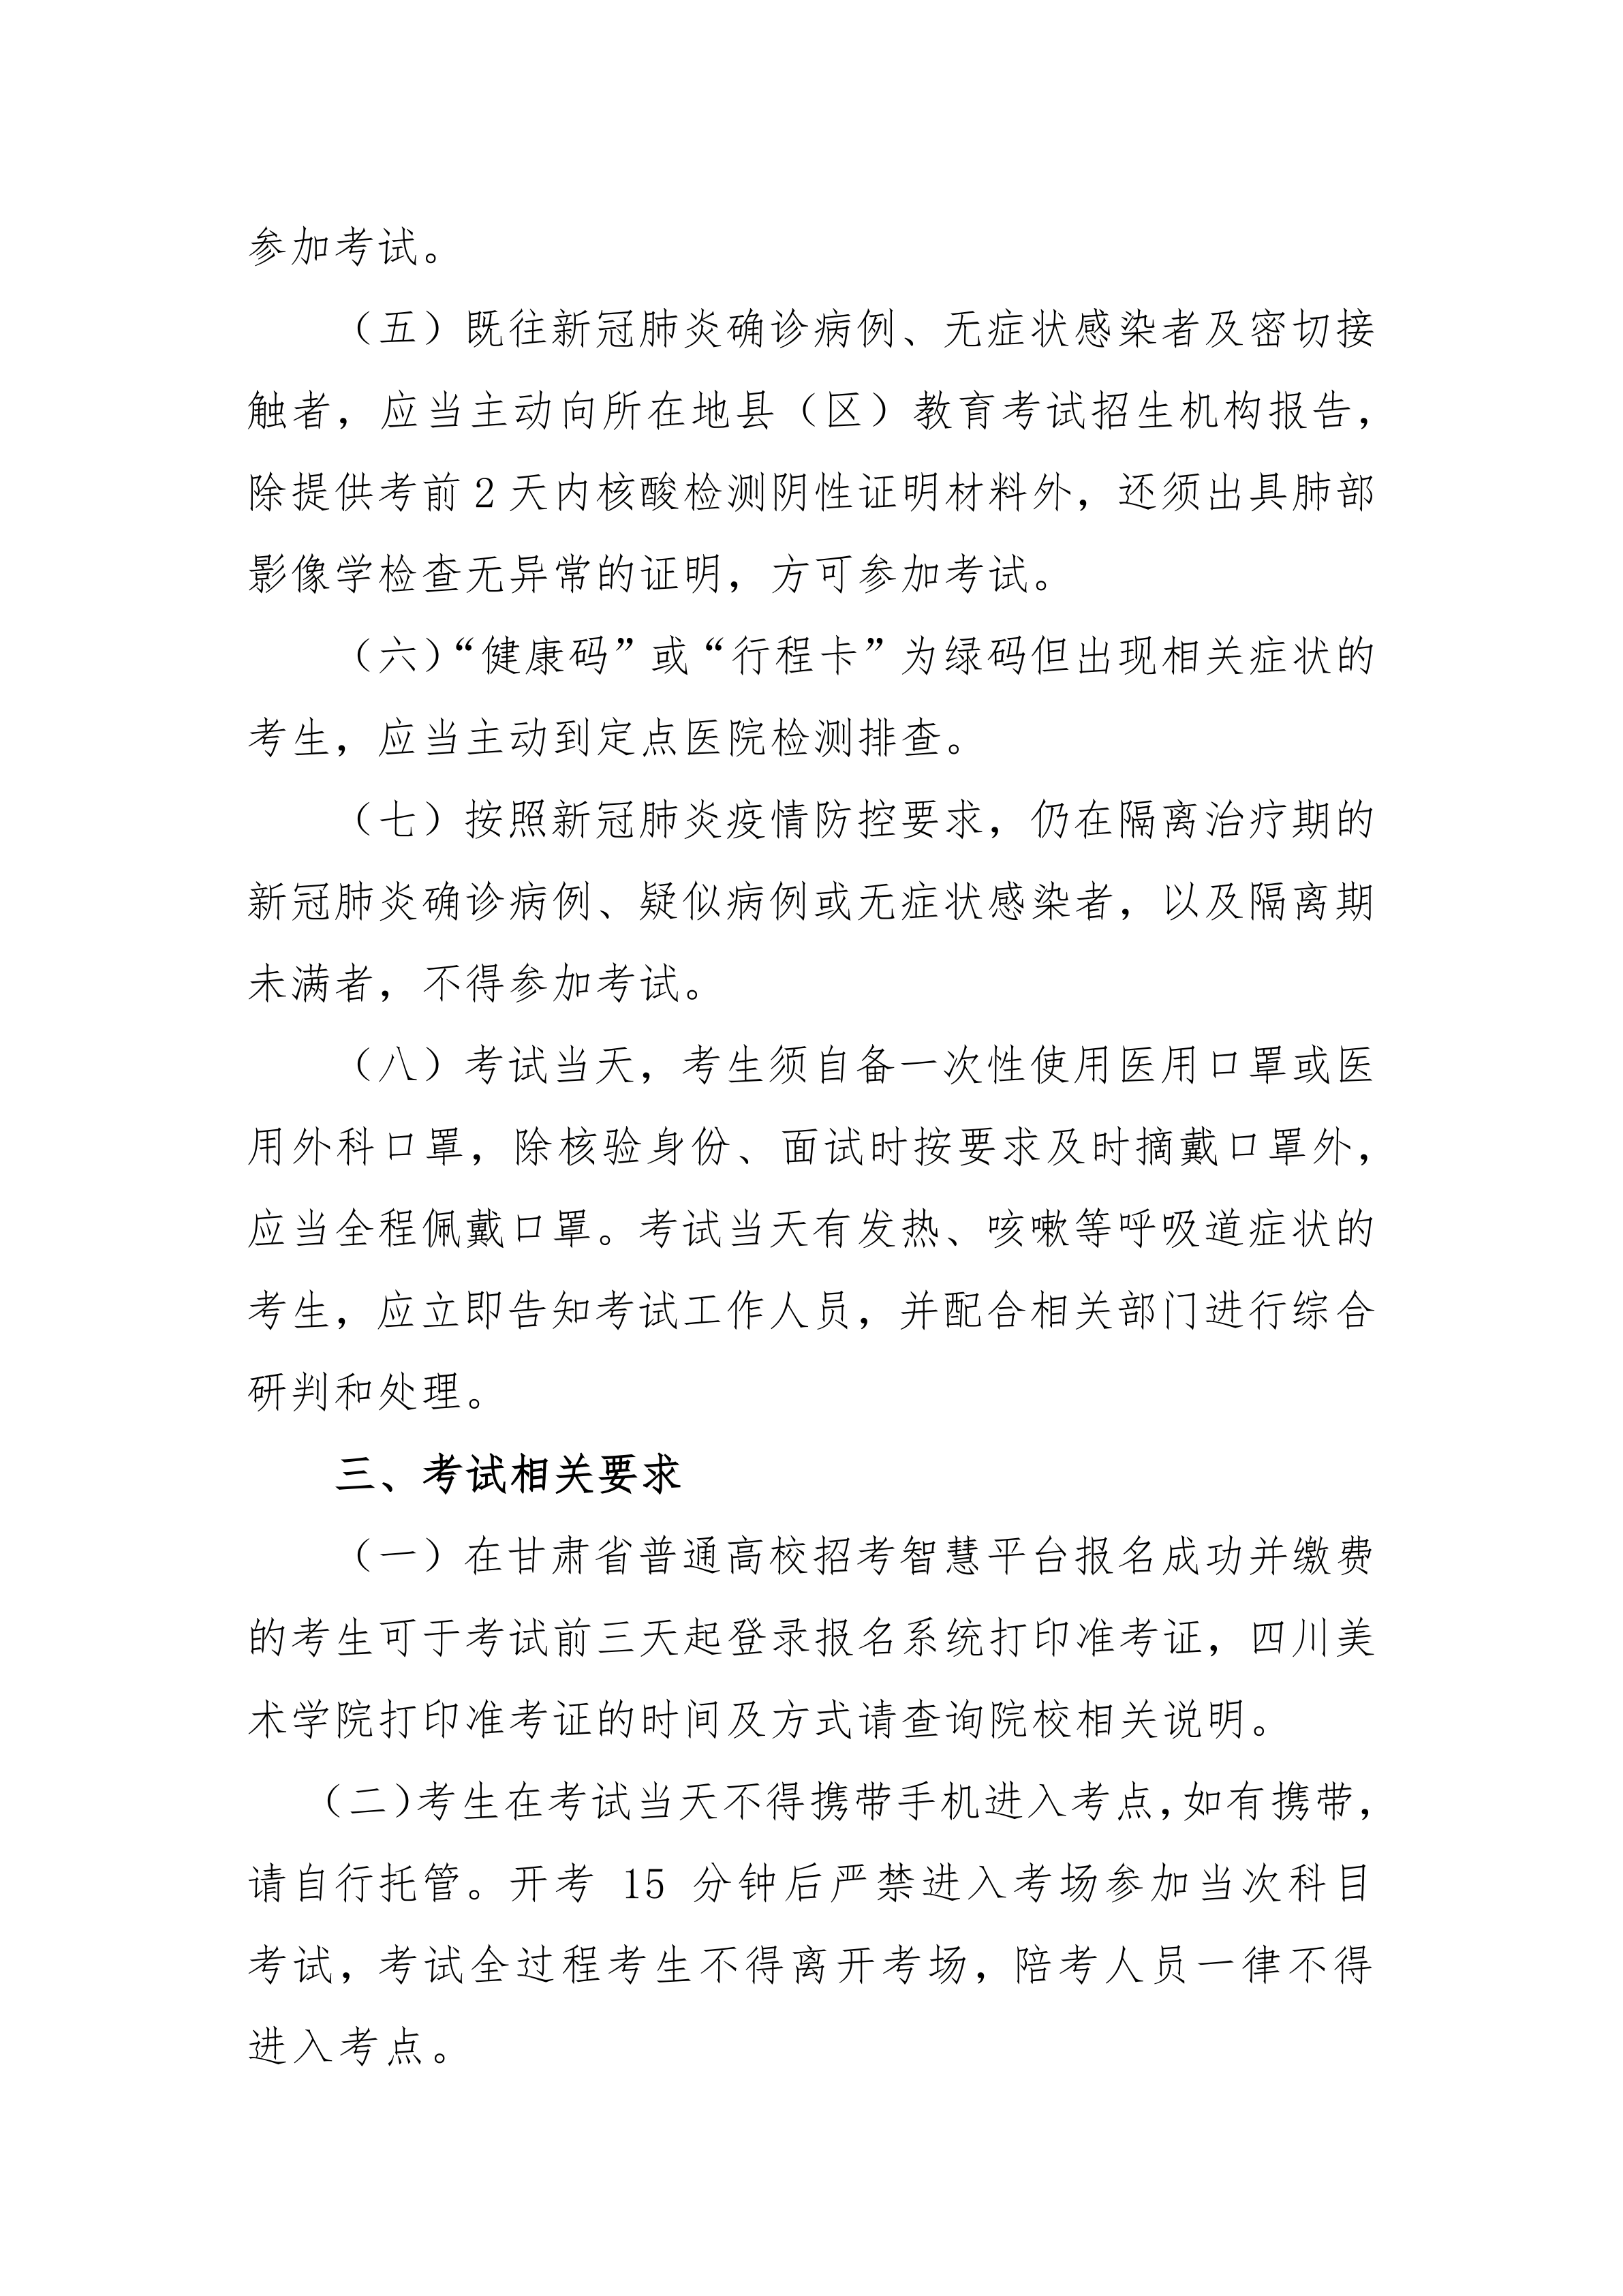 附件五：2021年甘肃省普通高校招生艺术类专业校考考生指南_3.png